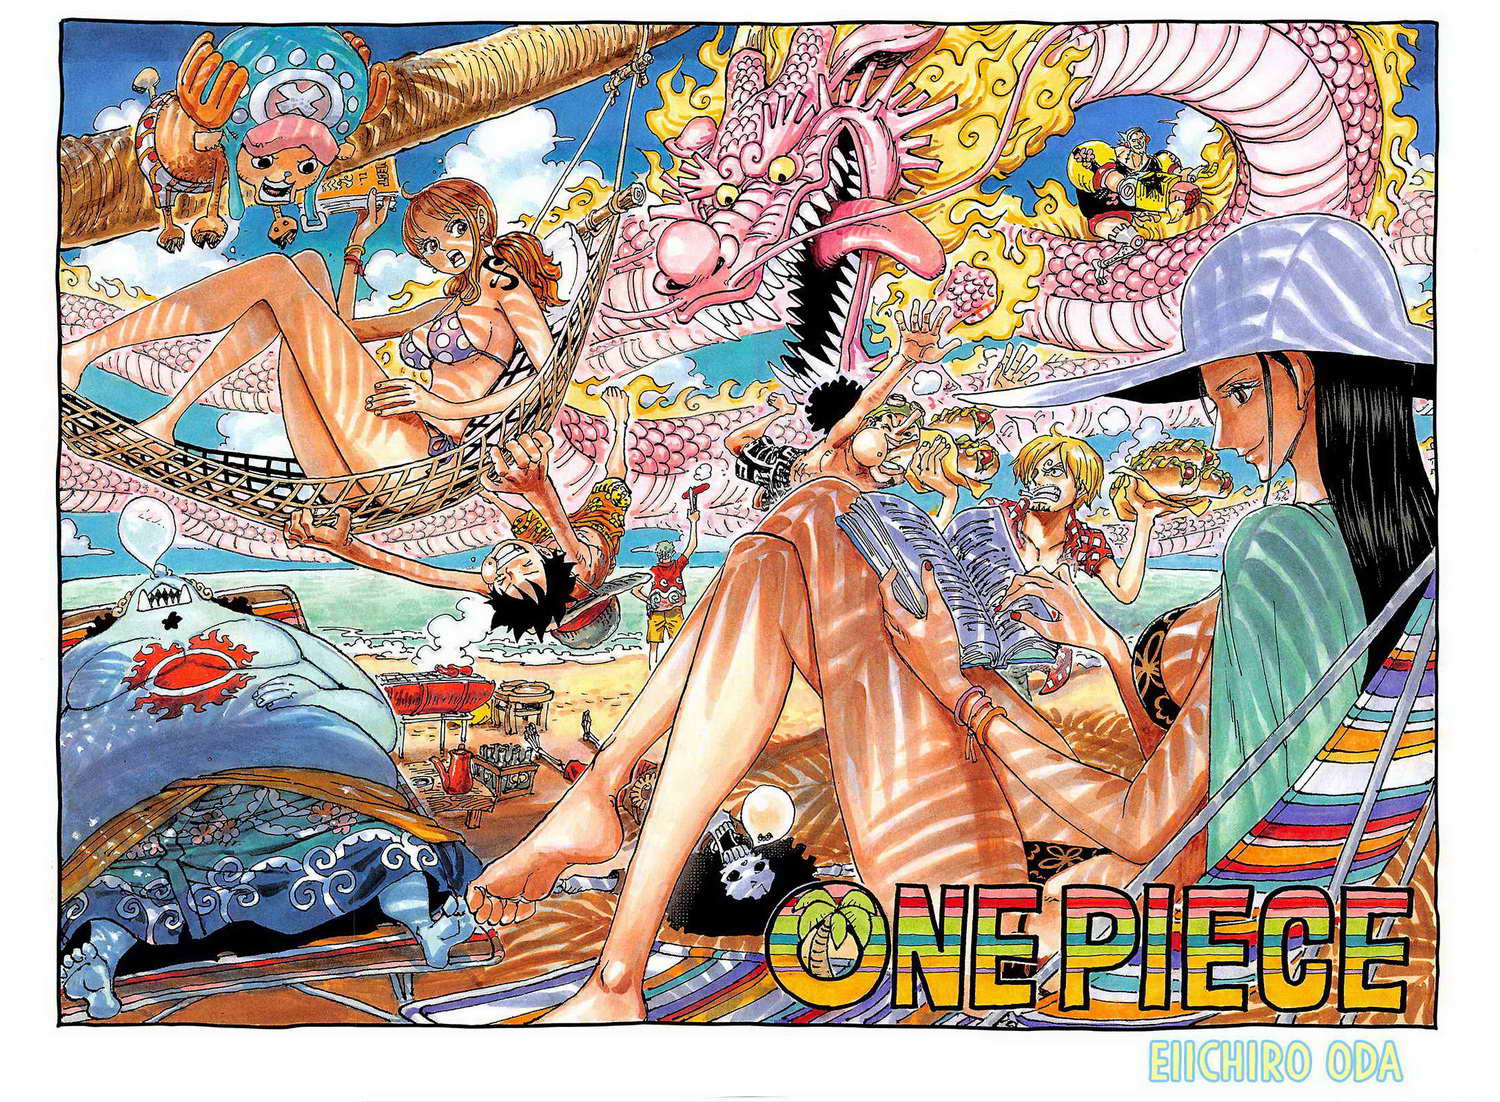 One Piece Berwarna Chapter 1046